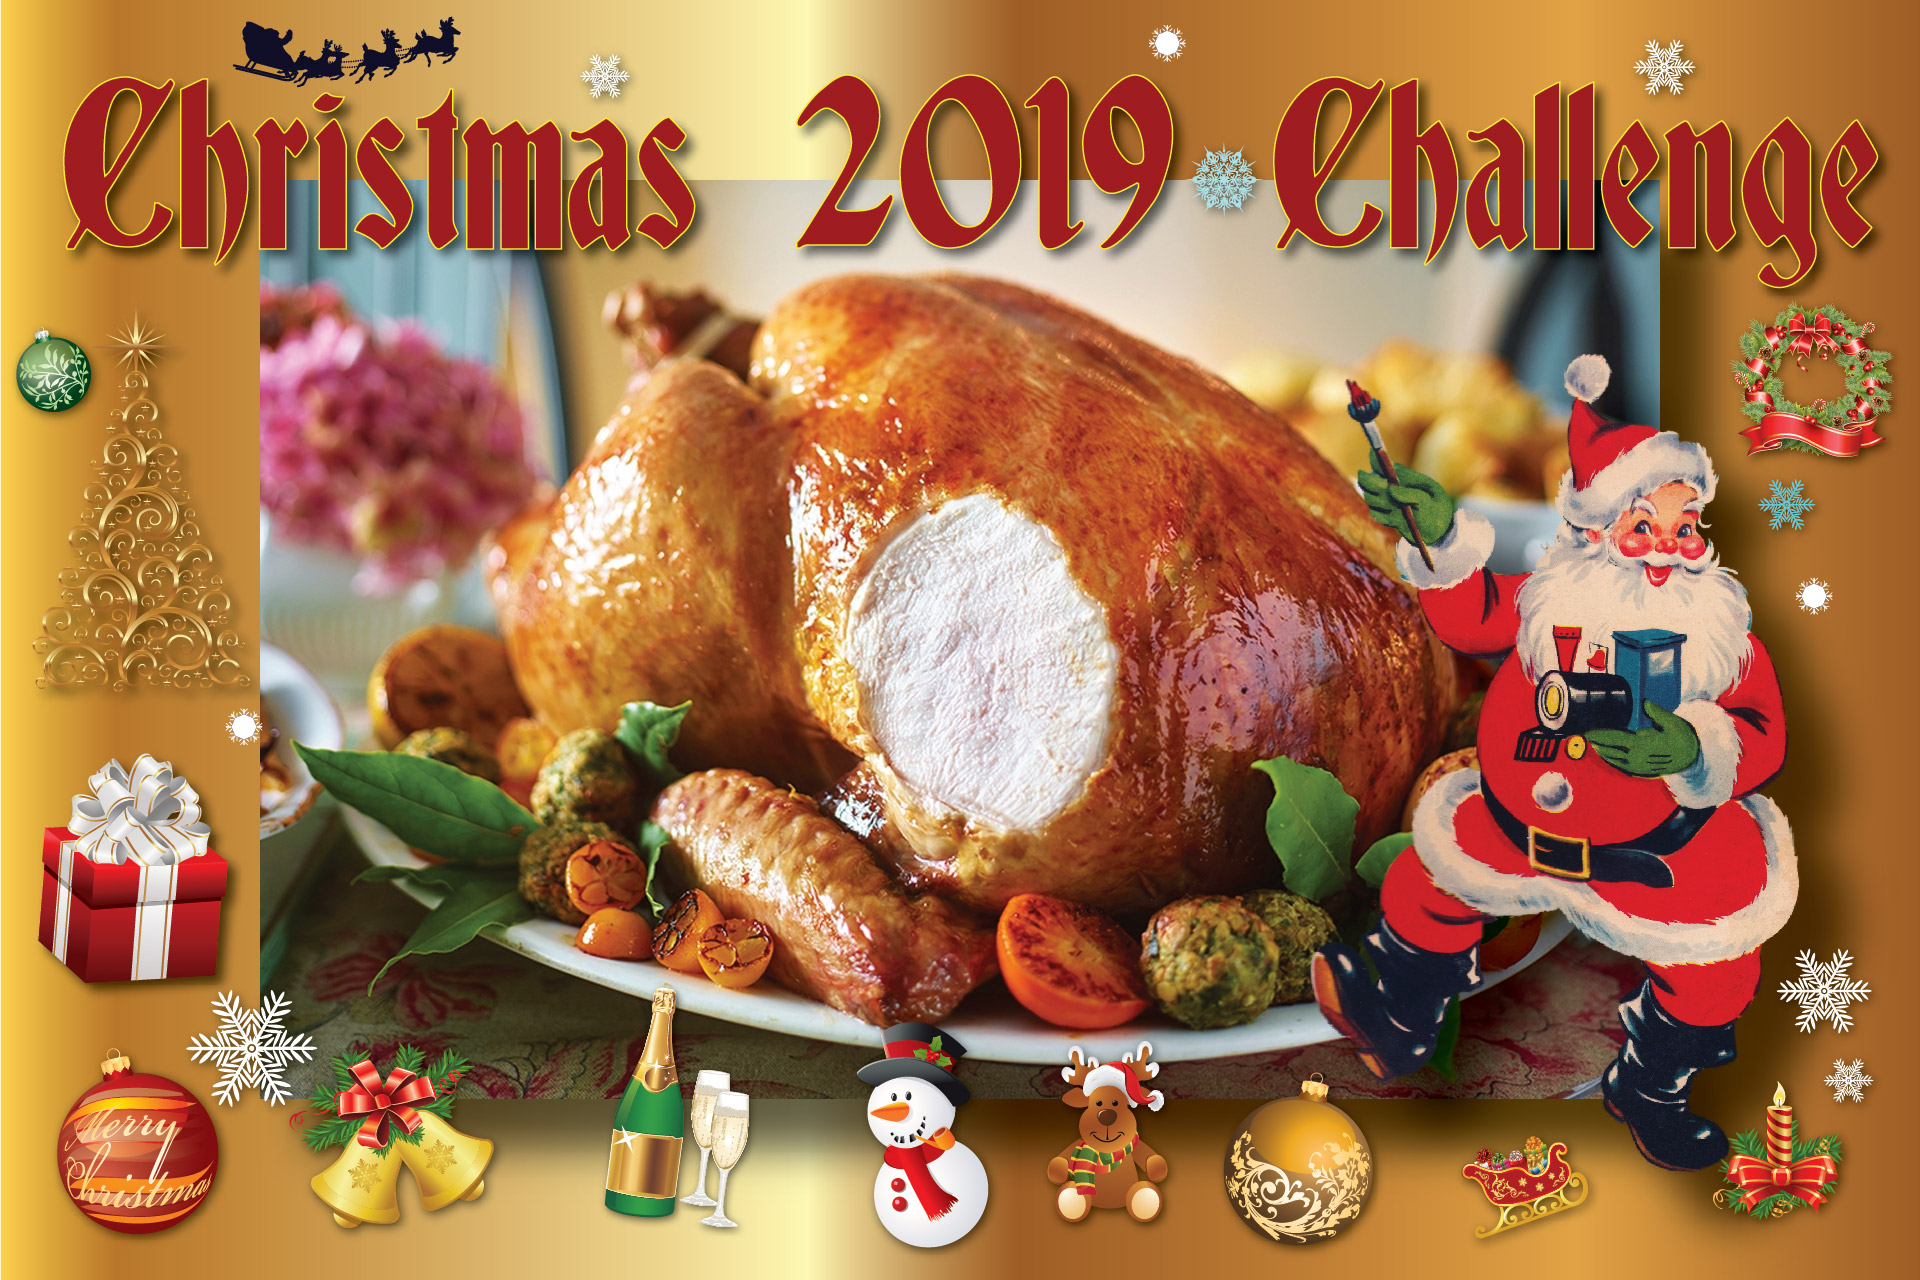 The Grovehill Christmas 2019 Challenge